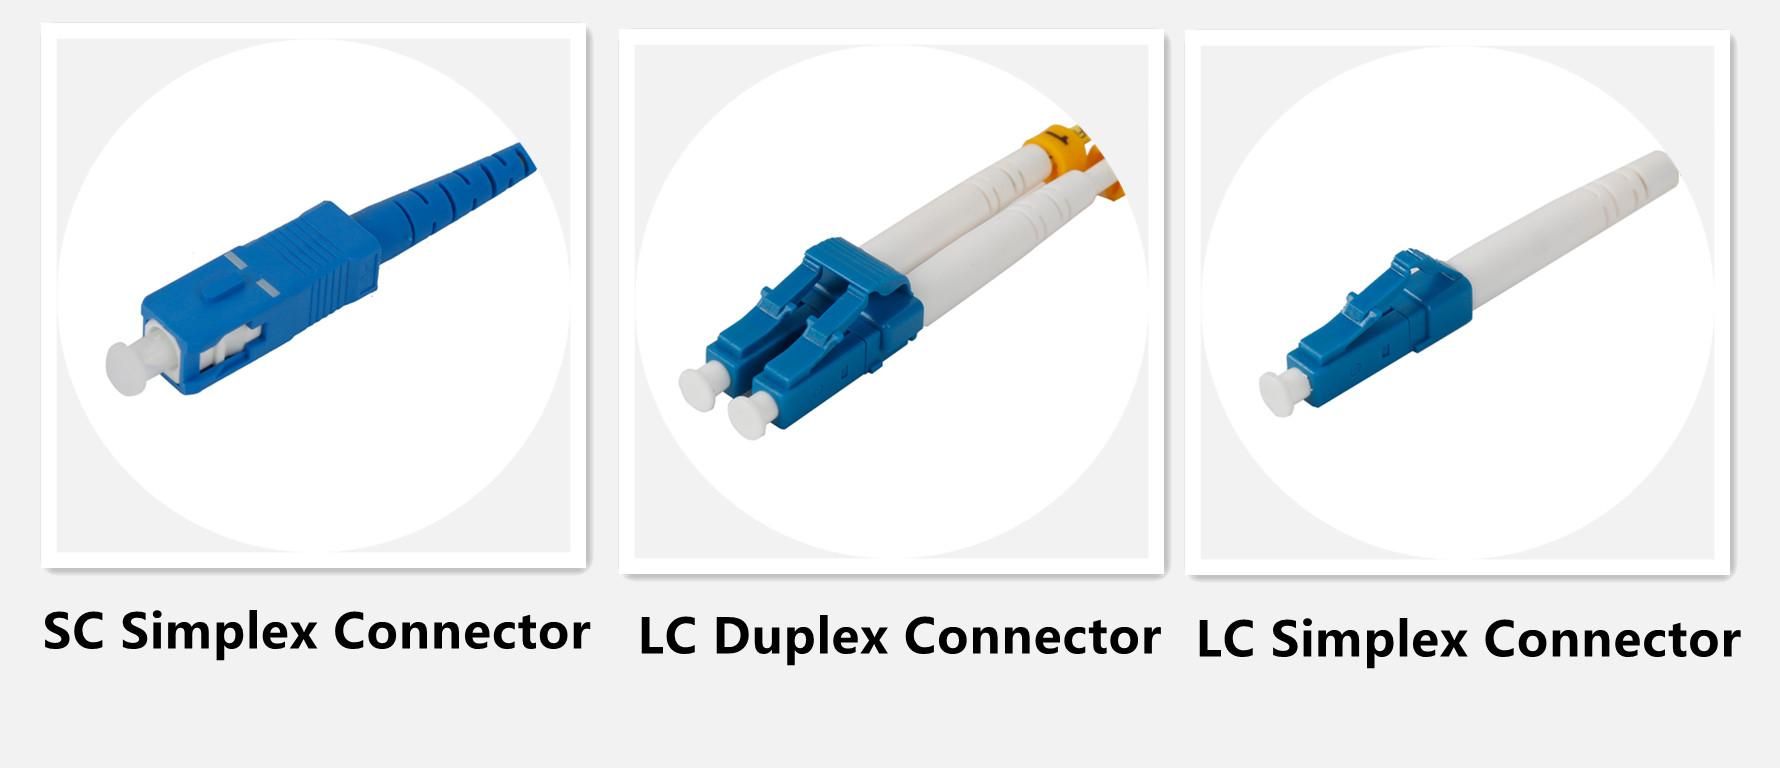 LC-produkt i fiberoptik